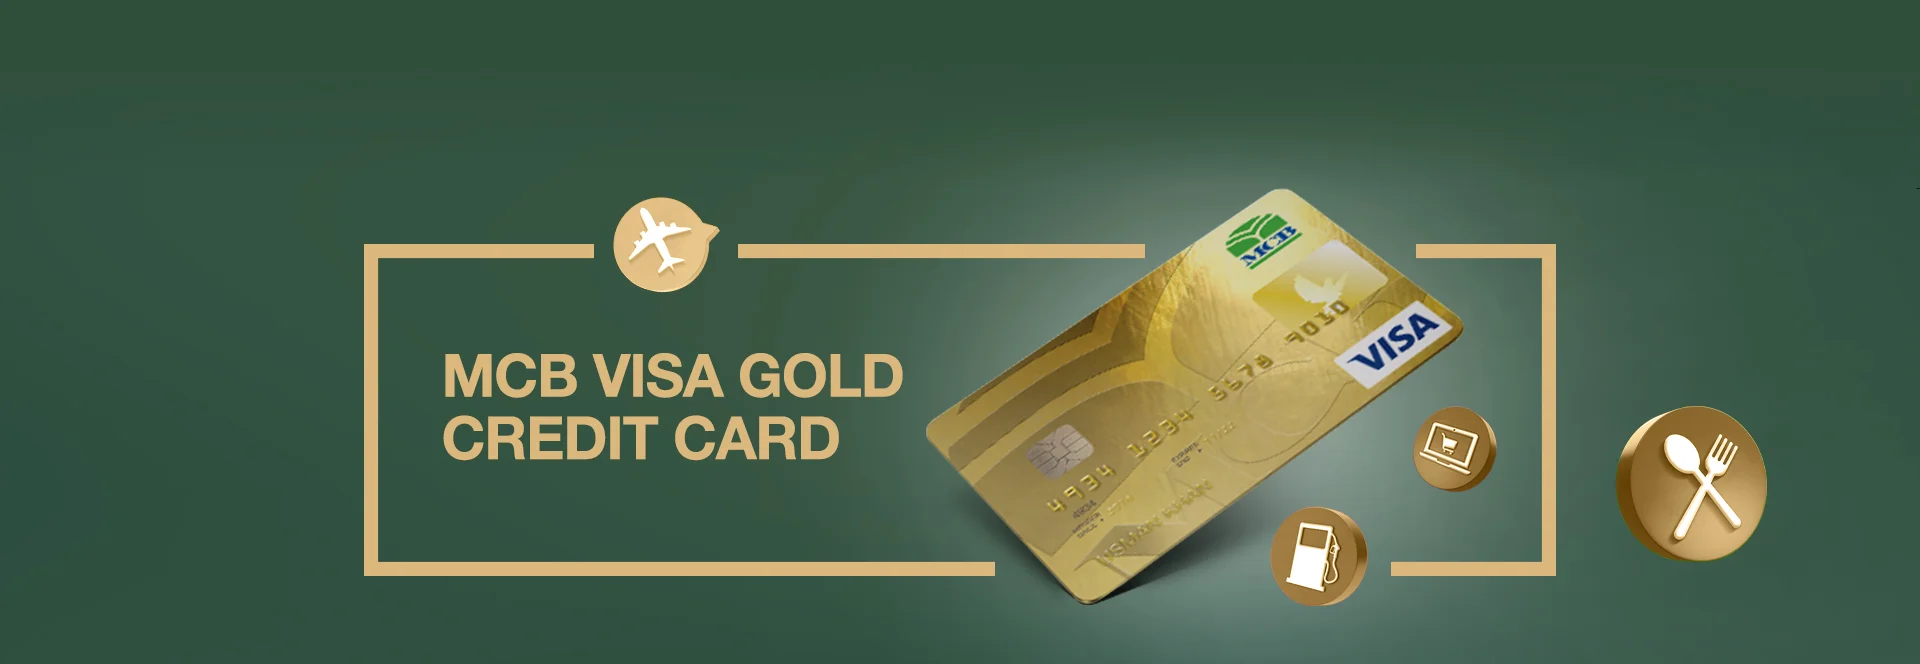 MCB Visa Gold Credit Card